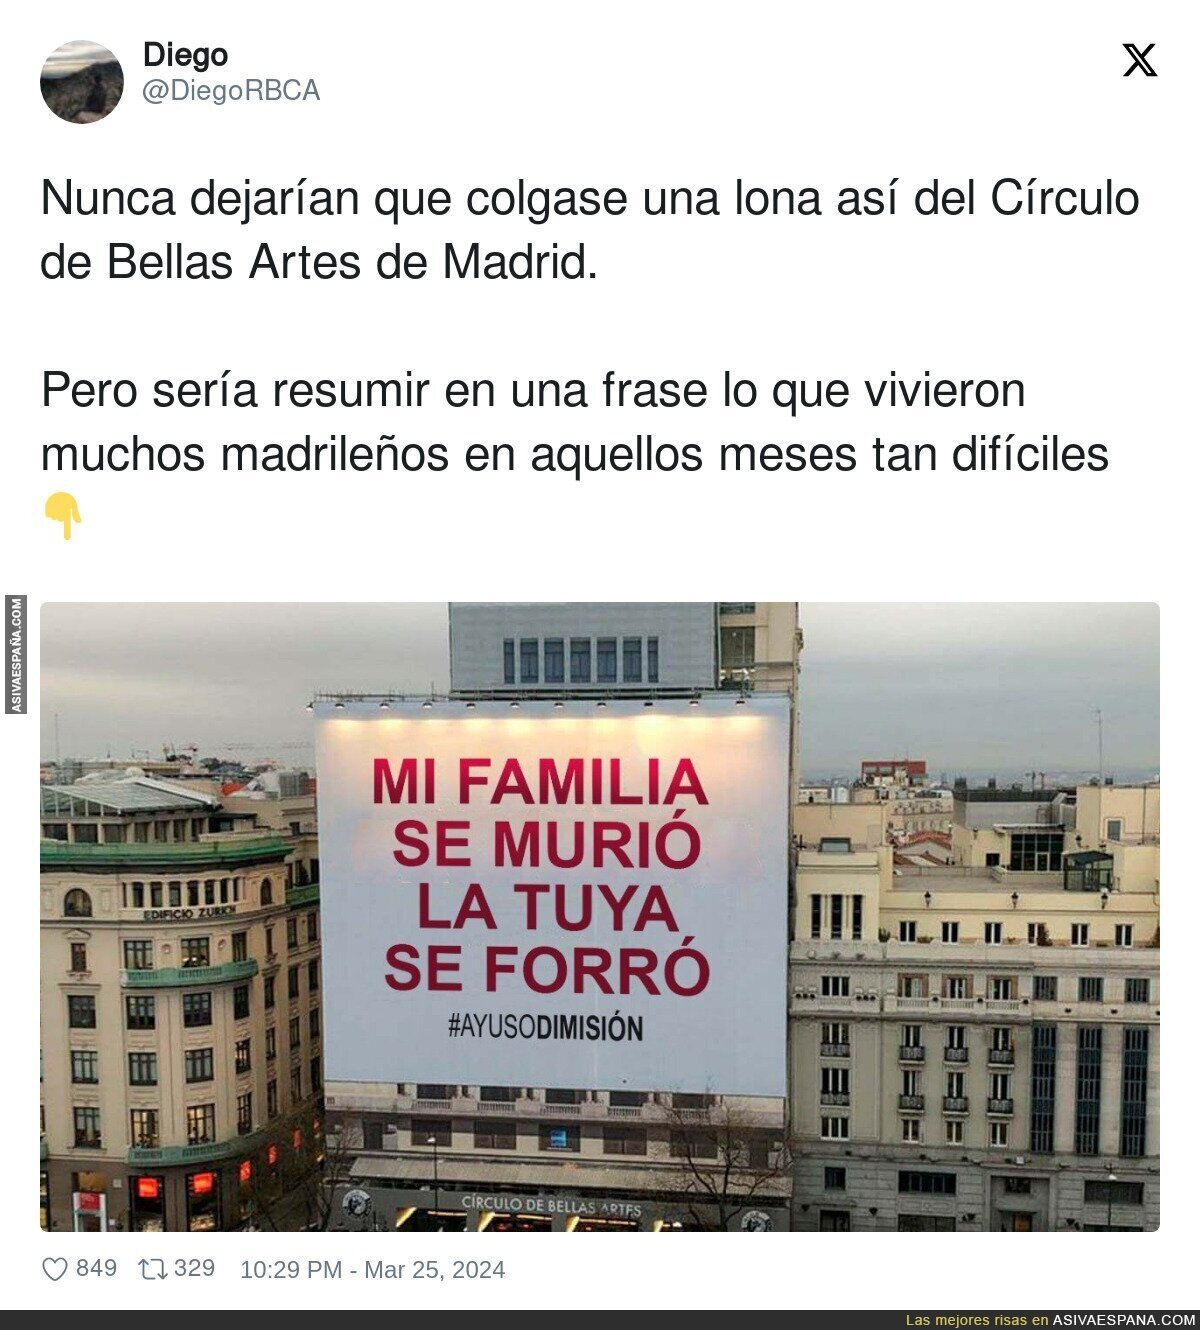 La frase que nunca se verá en Madrid